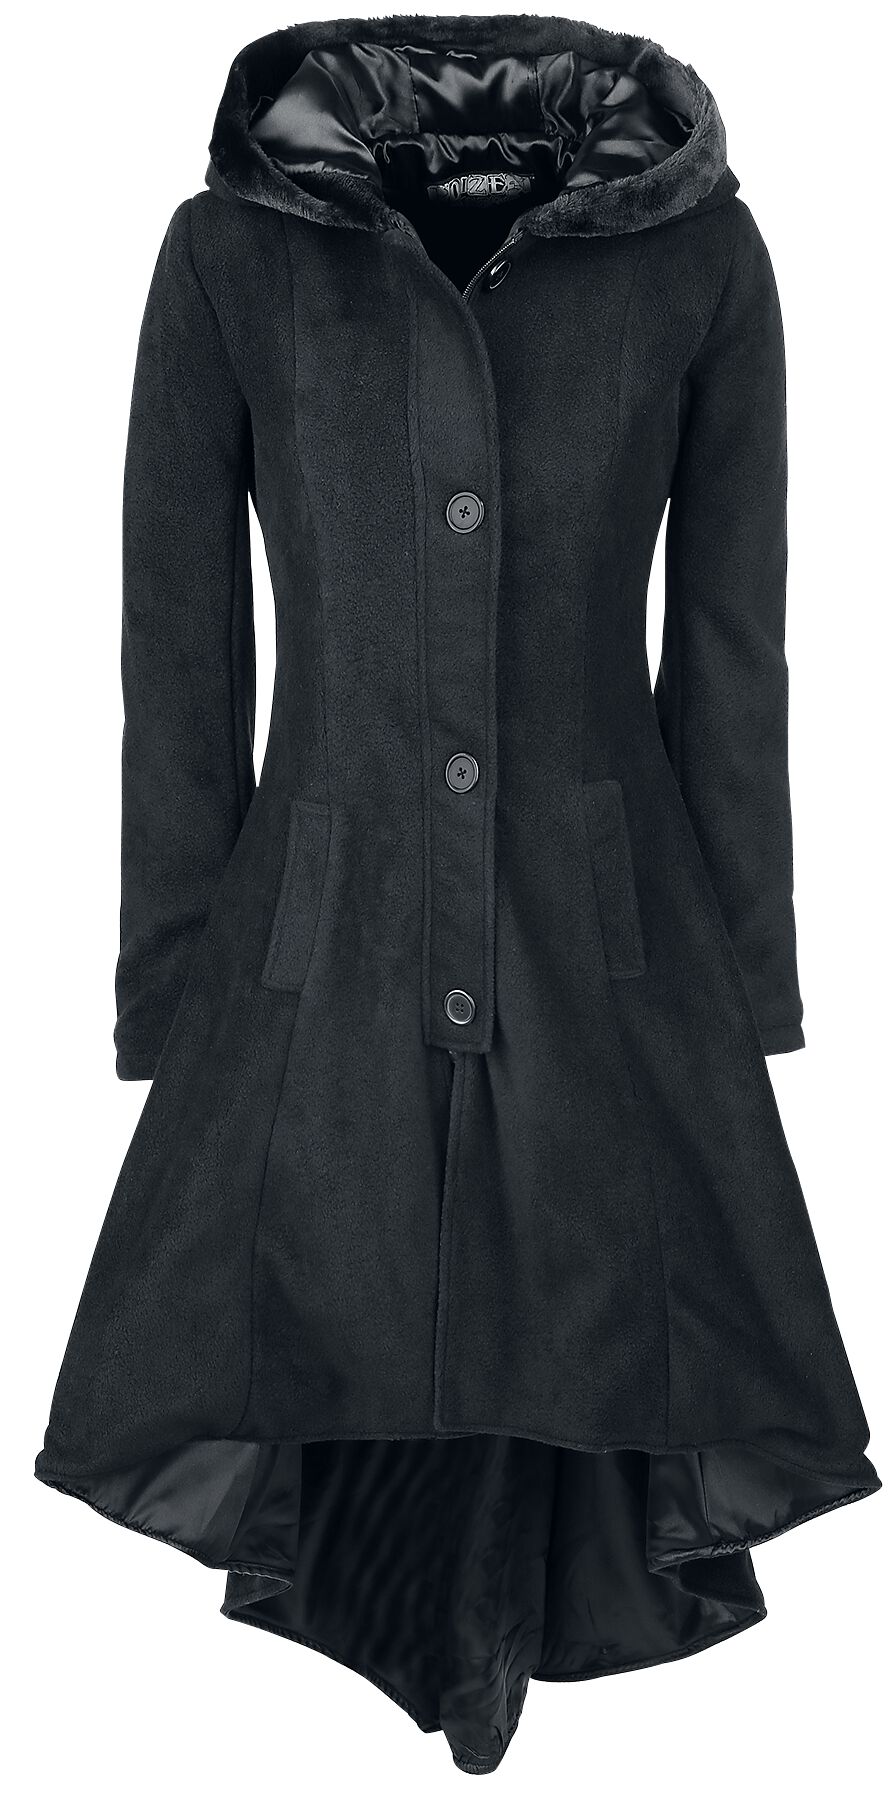 Manteau d'hiver Gothic de Poizen Industries - Manteau Memorial - S à XL - pour Femme - noir